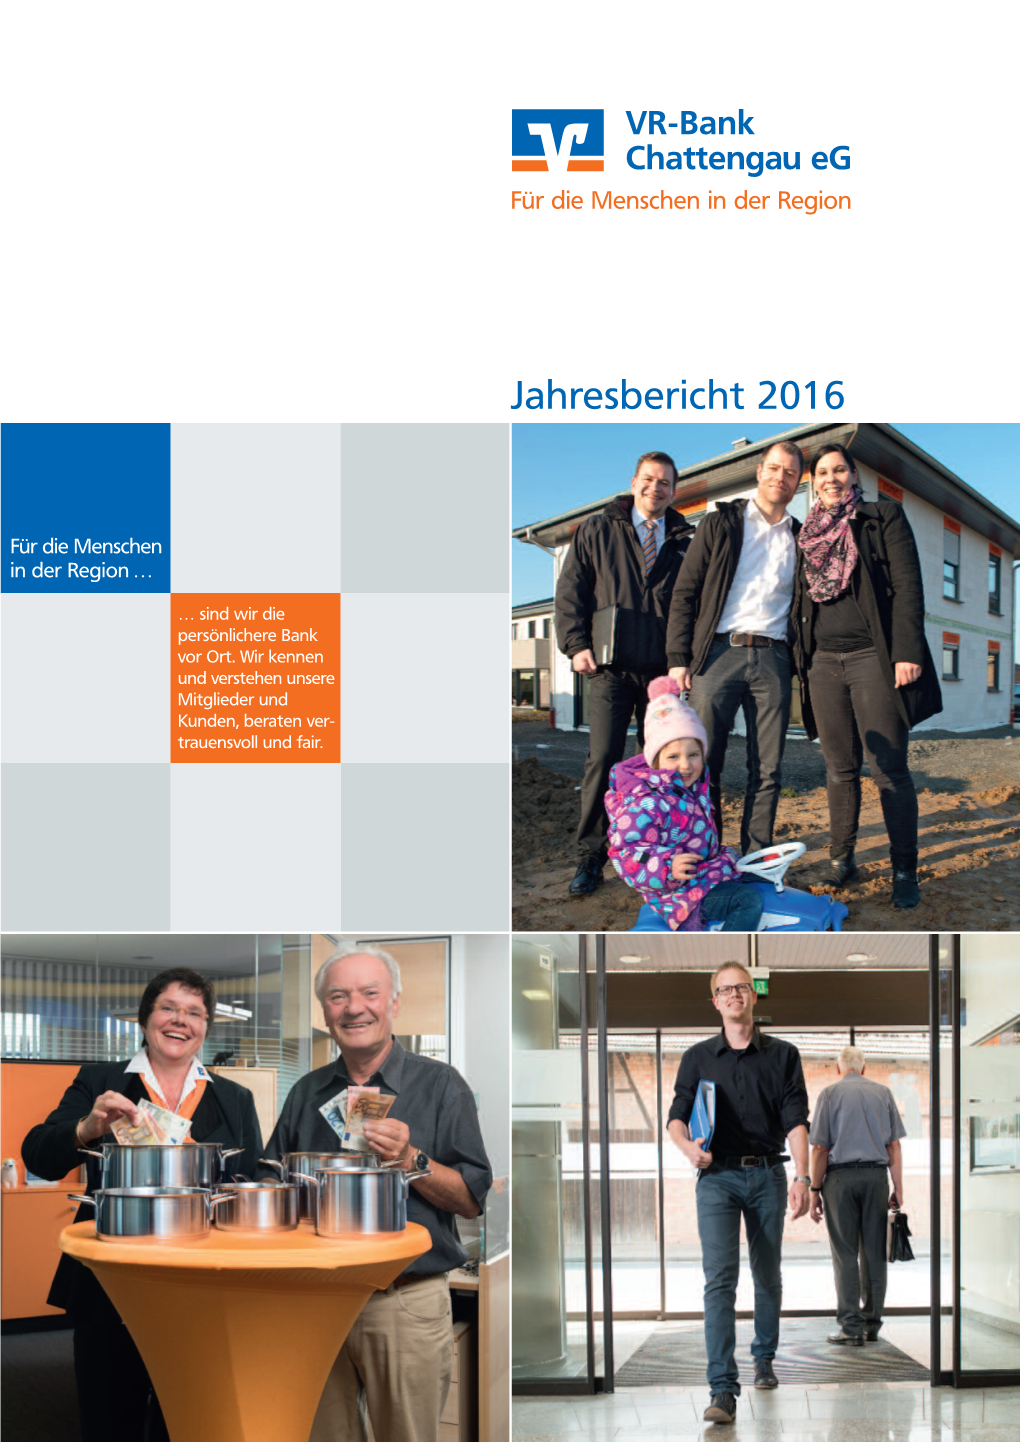 VR-Bank Chattengau Eg, Jahresbericht 2016